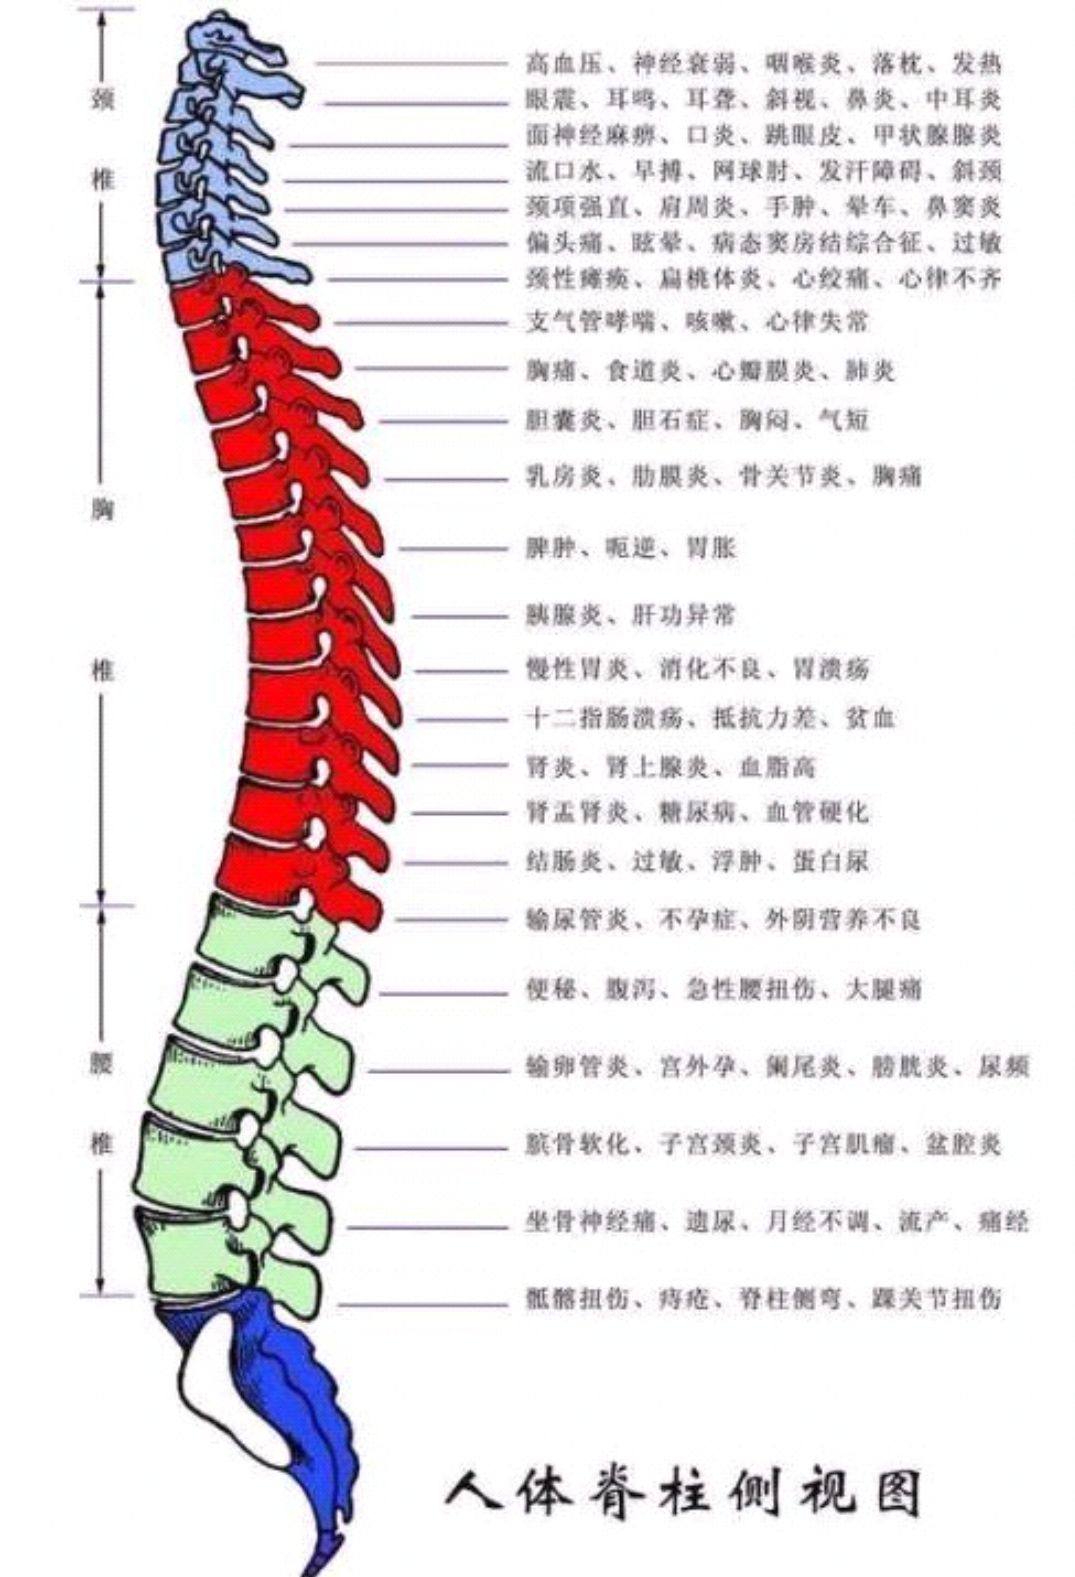 脊柱不是直的,而是有四个正常生理弯曲?